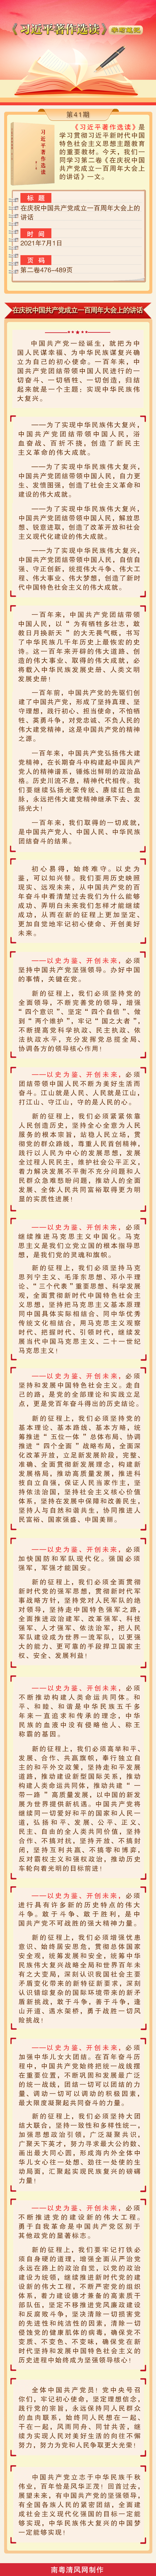 《习近平著作选读》学习笔记：在庆祝中国共产党成立一百周年大会上的讲话.png